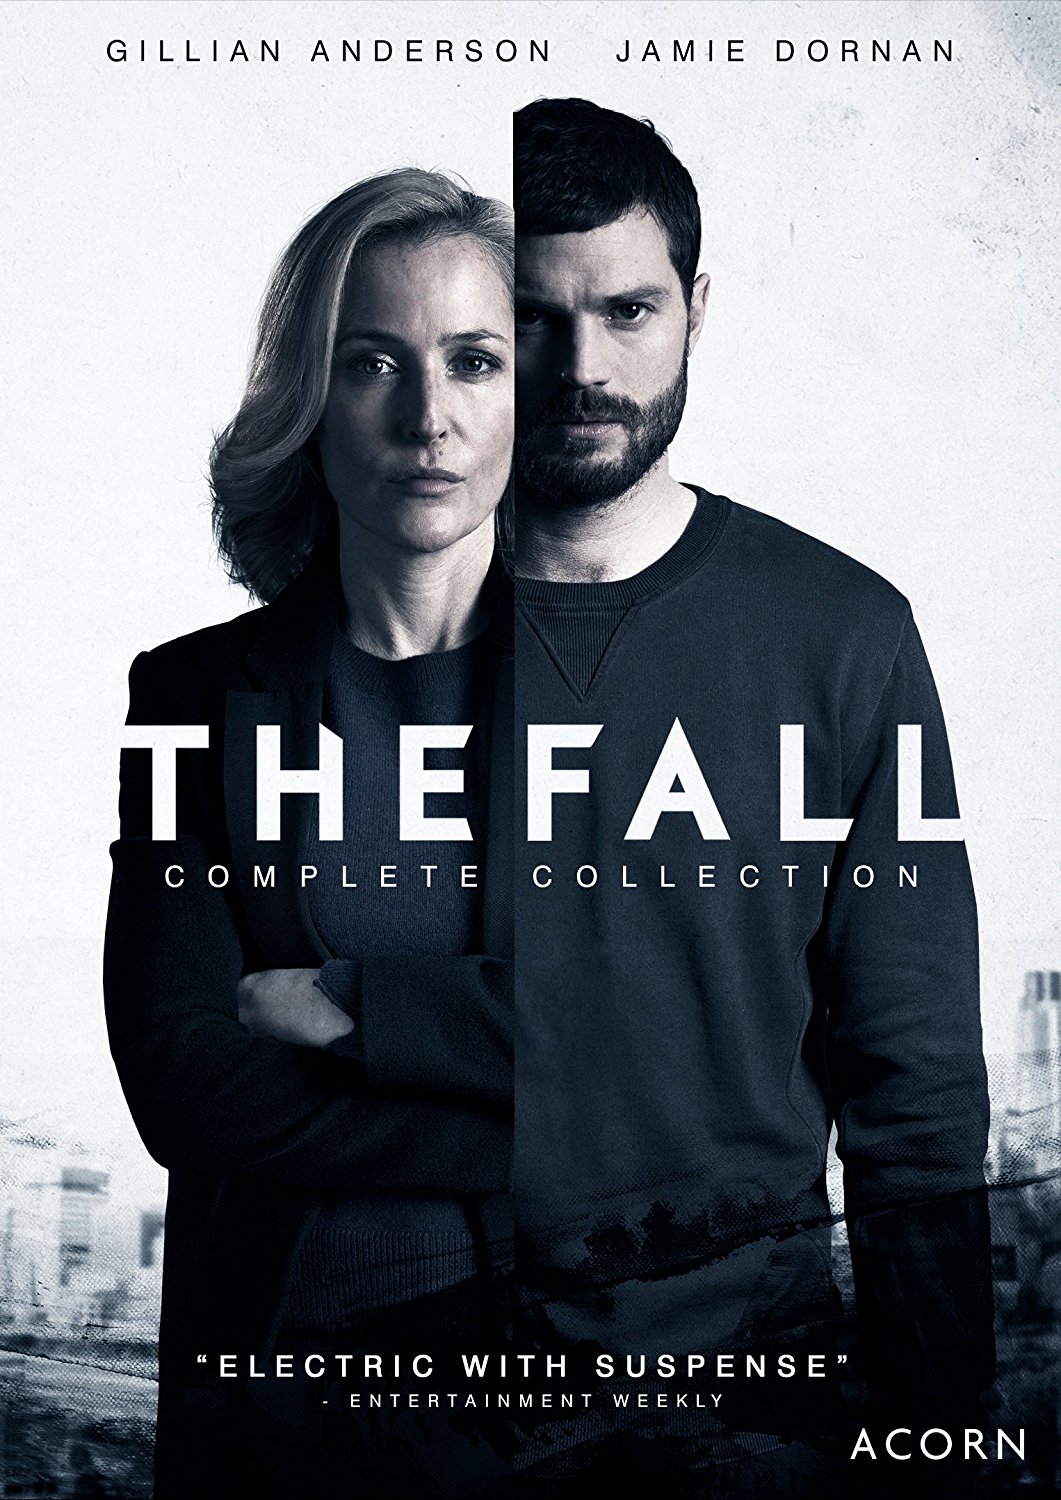 The-Fall-cover-crime-drama